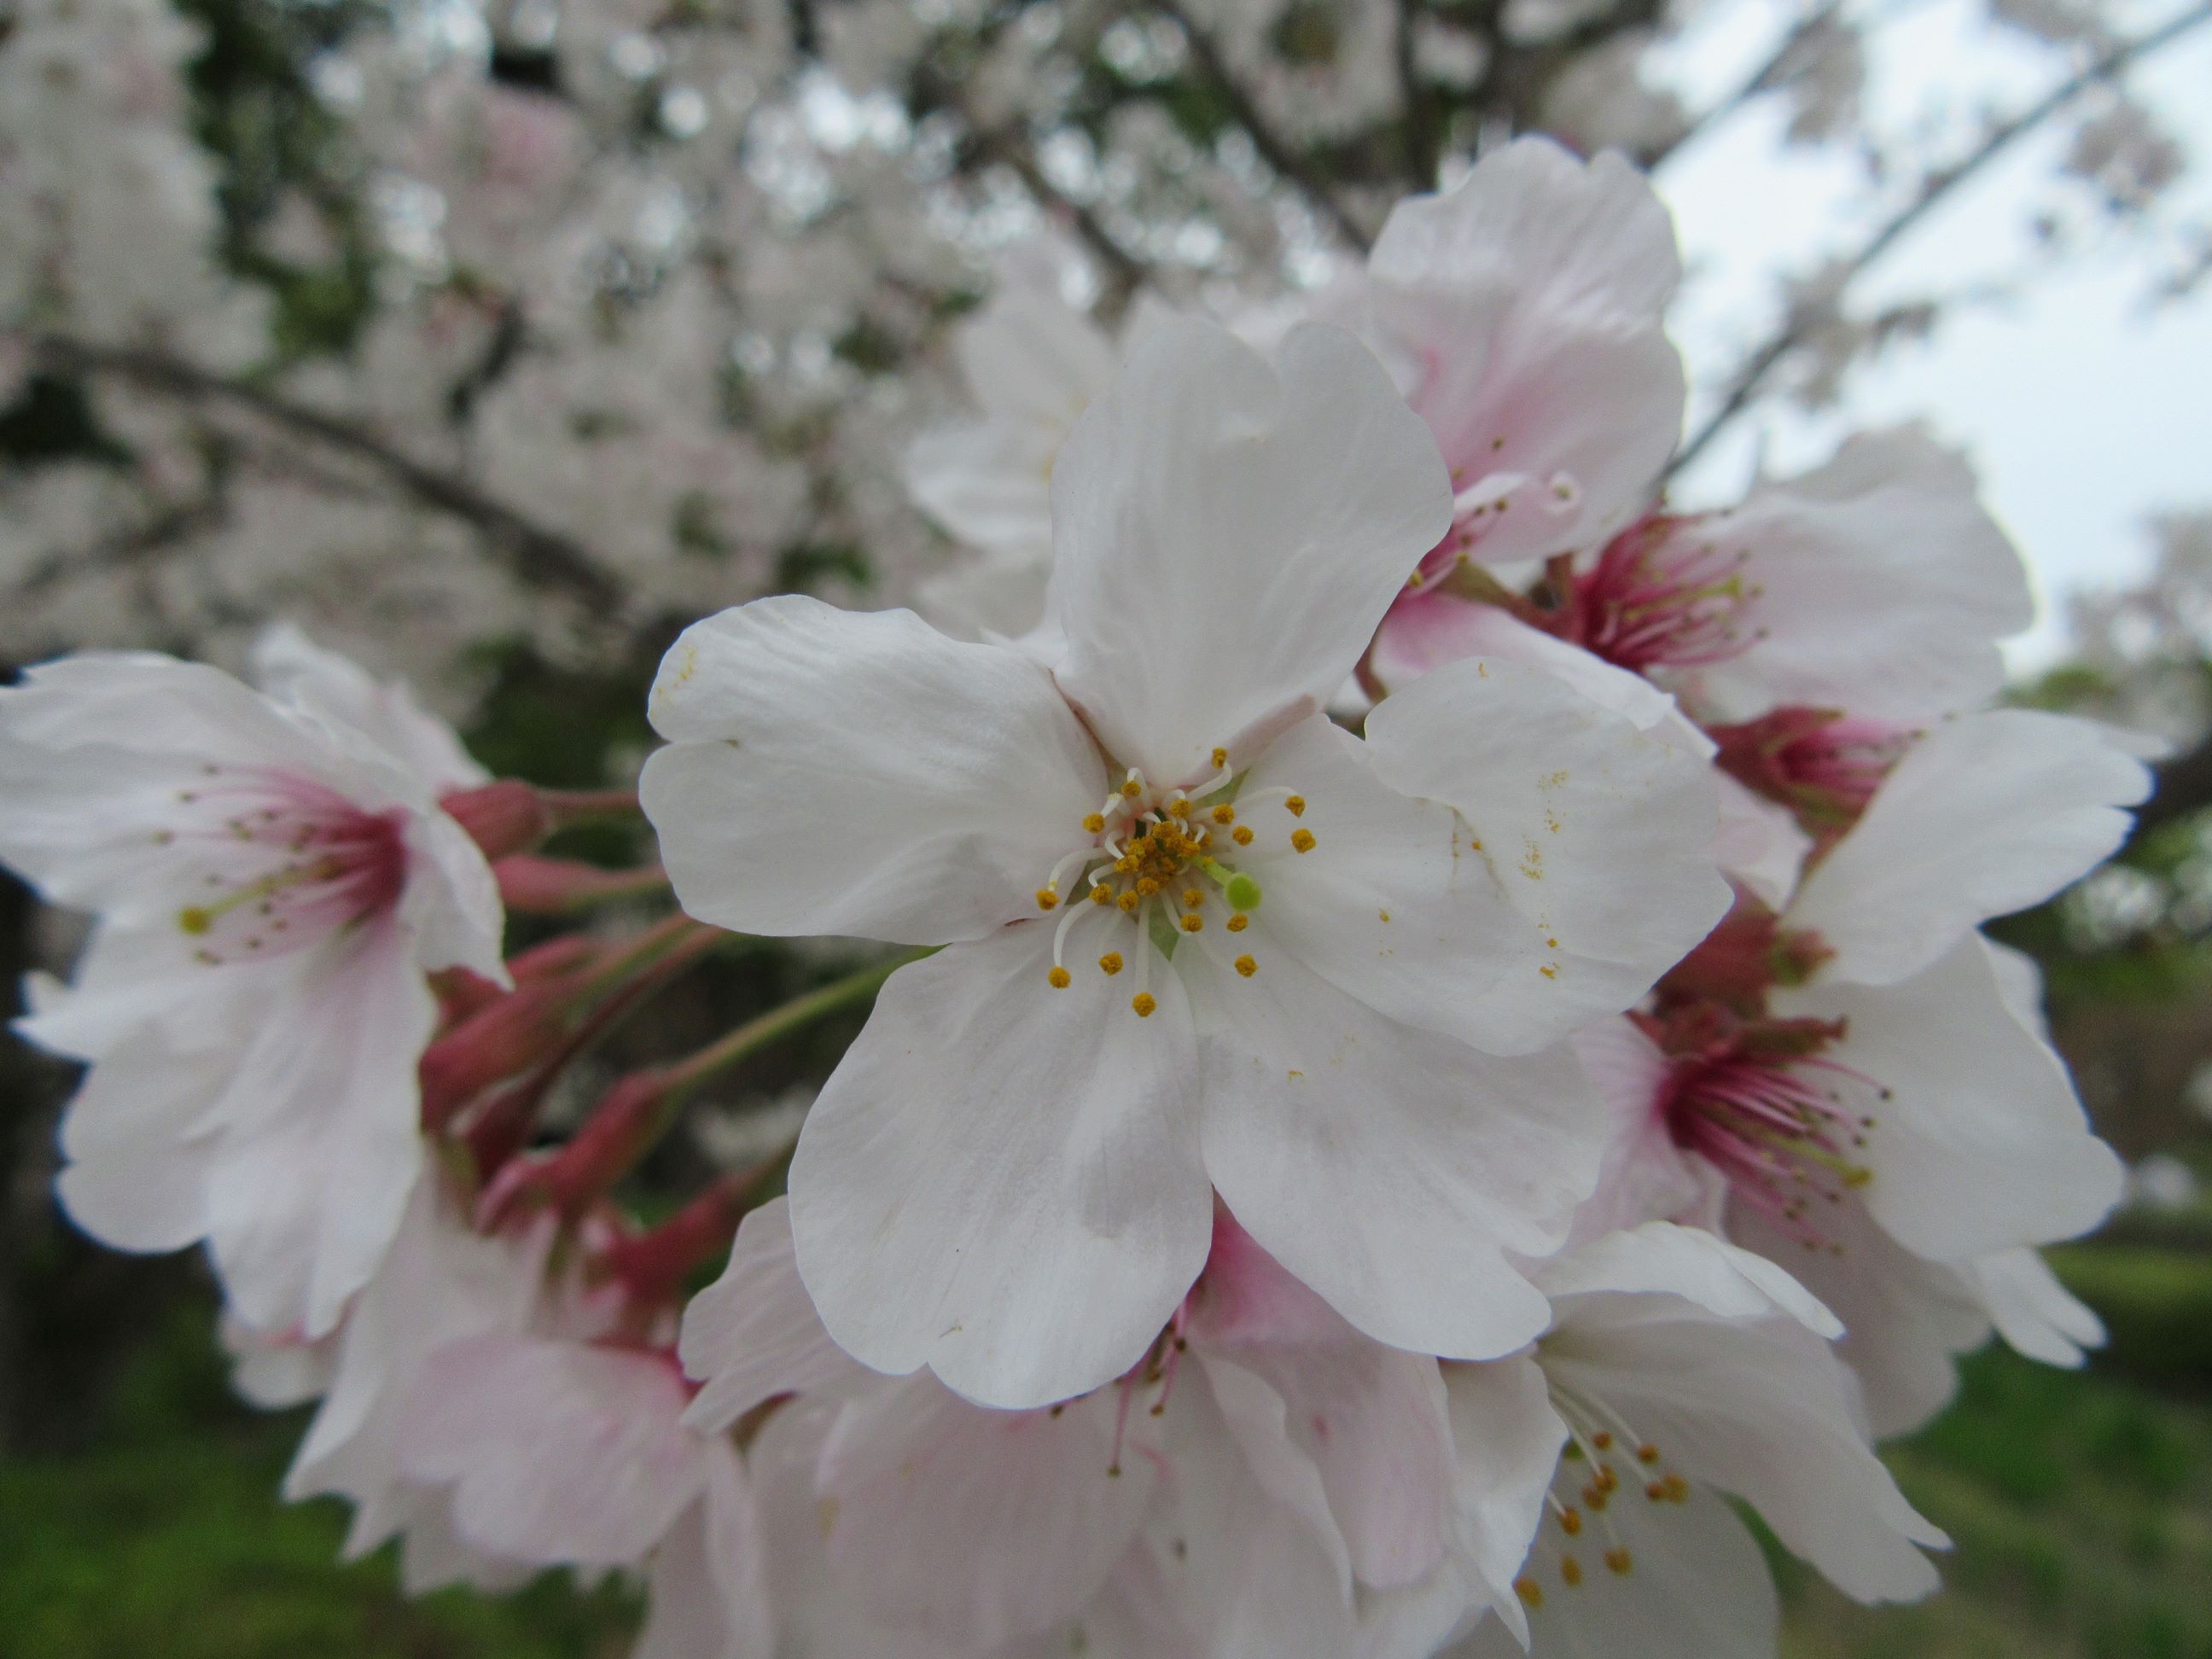 長崎県大村市の大村公園にて撮影した、近い距離からの桜の花です。